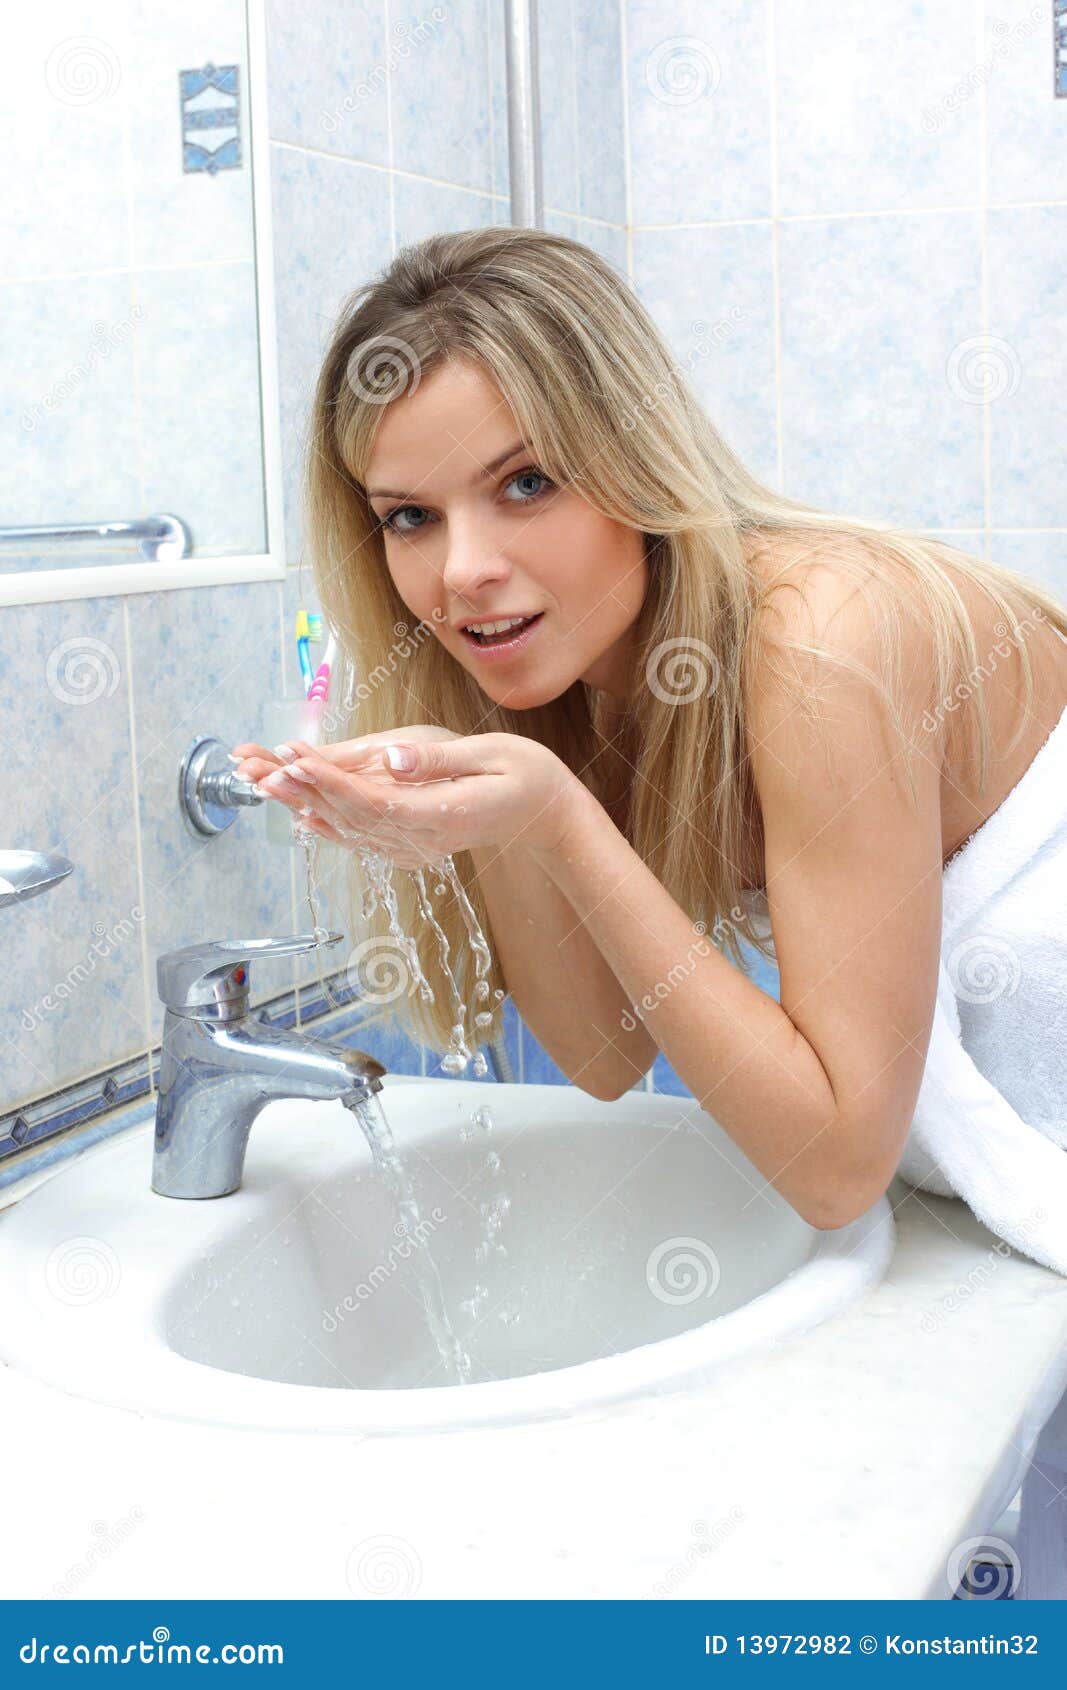 Женщина подмывается видео. Девушка подмывается. Красивые женщины подмываются. Юная в ванной. Красивая девушка моется в ванной.